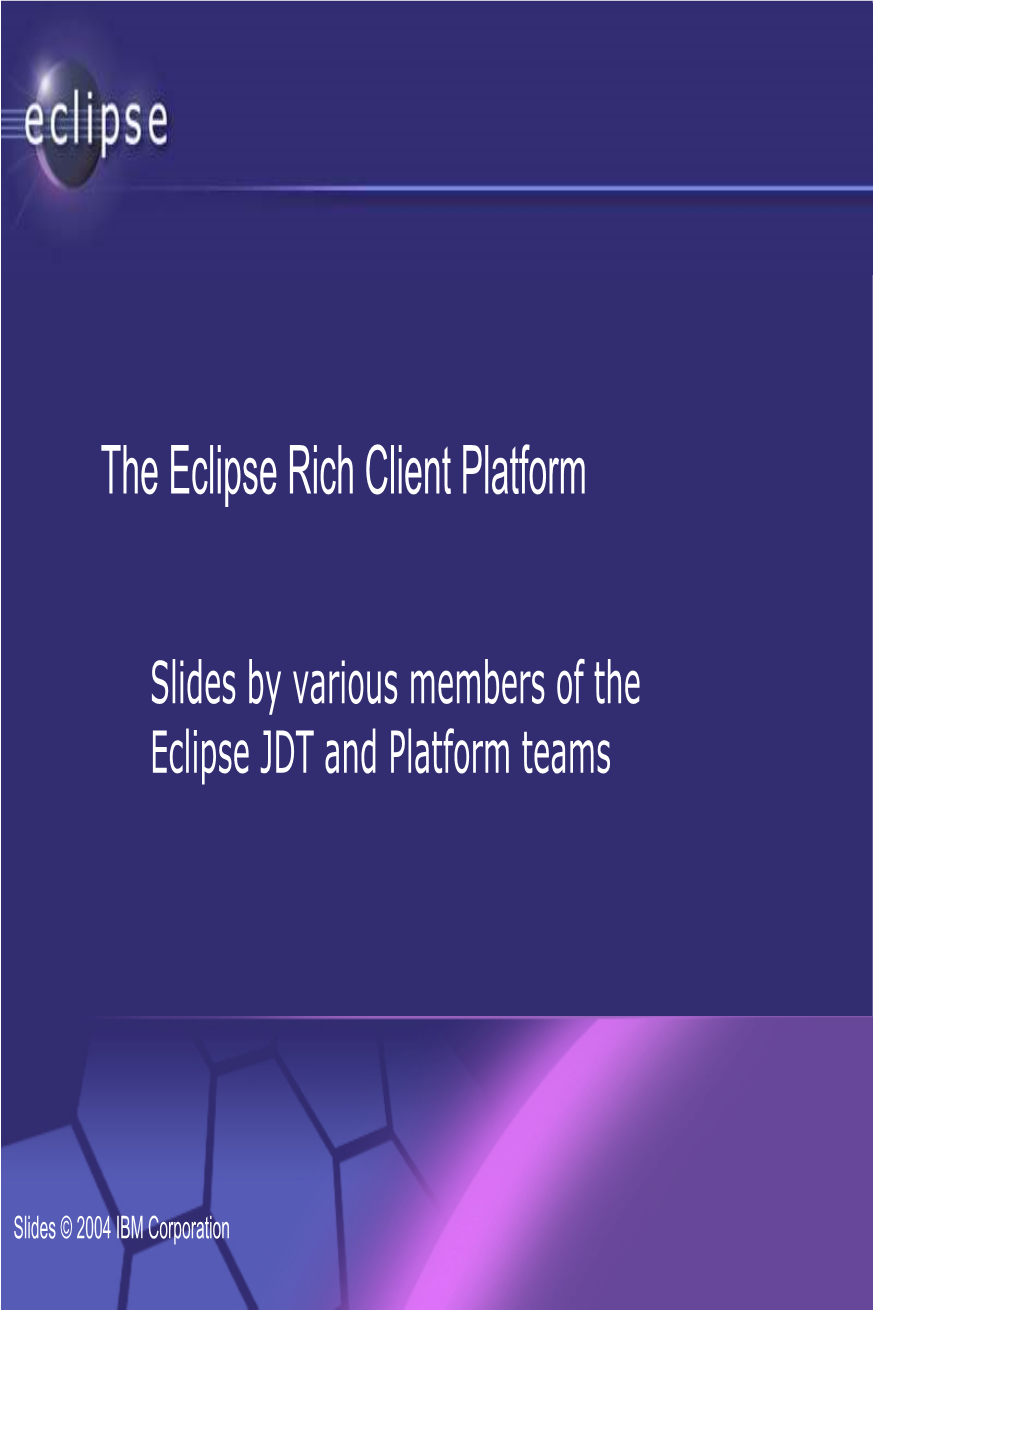 The Eclipse Rich Client Platform